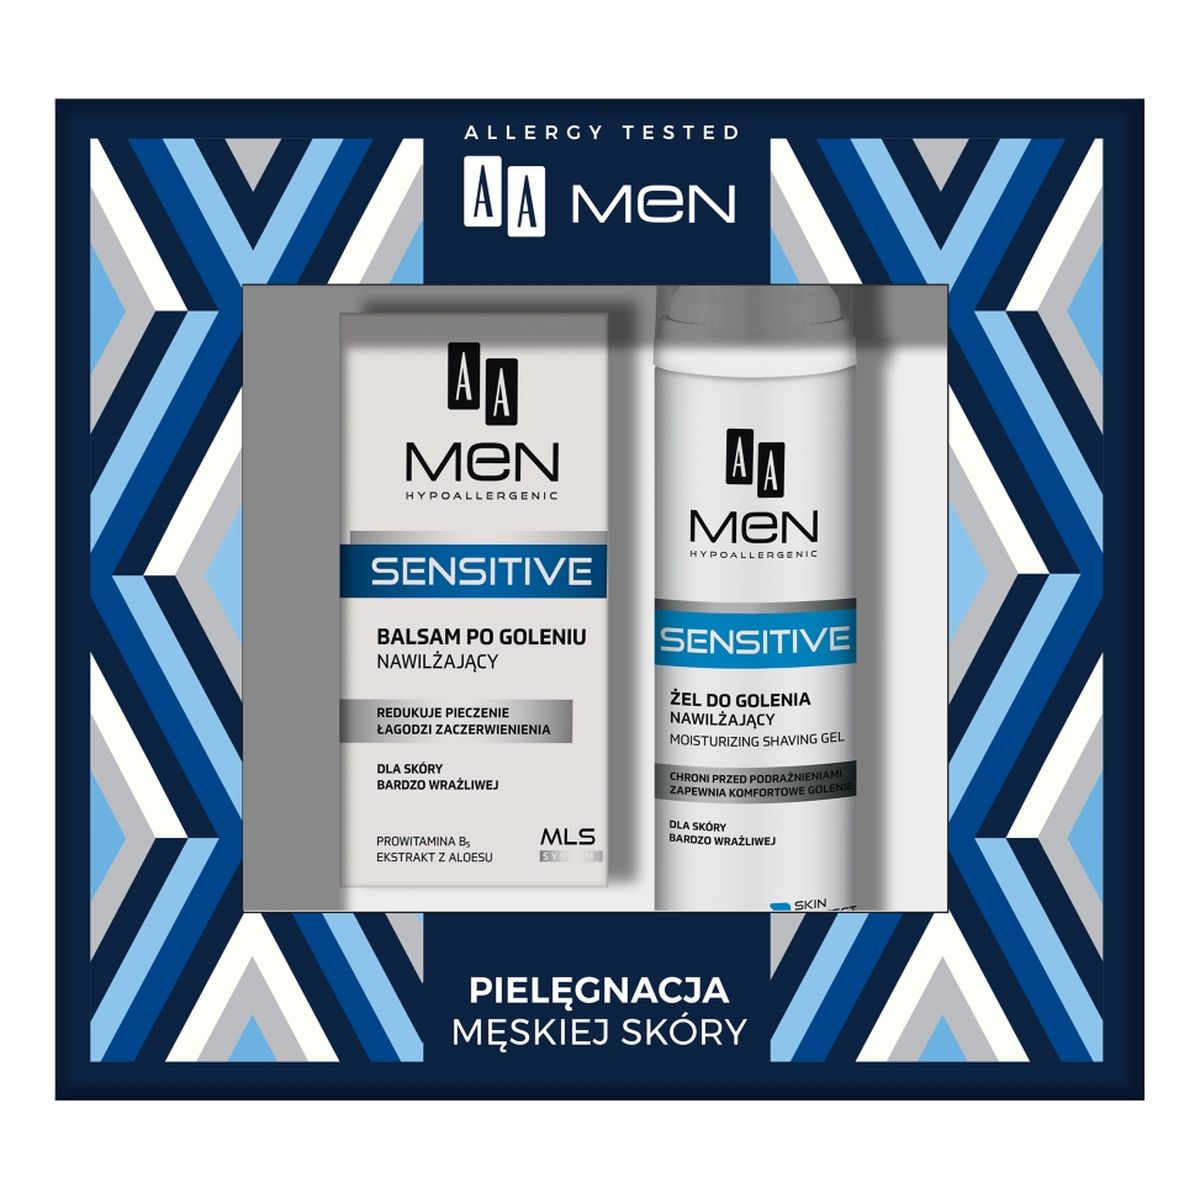 AA Men Sensitive Zestaw Żel do golenia nawilżający + balsam po goleniu